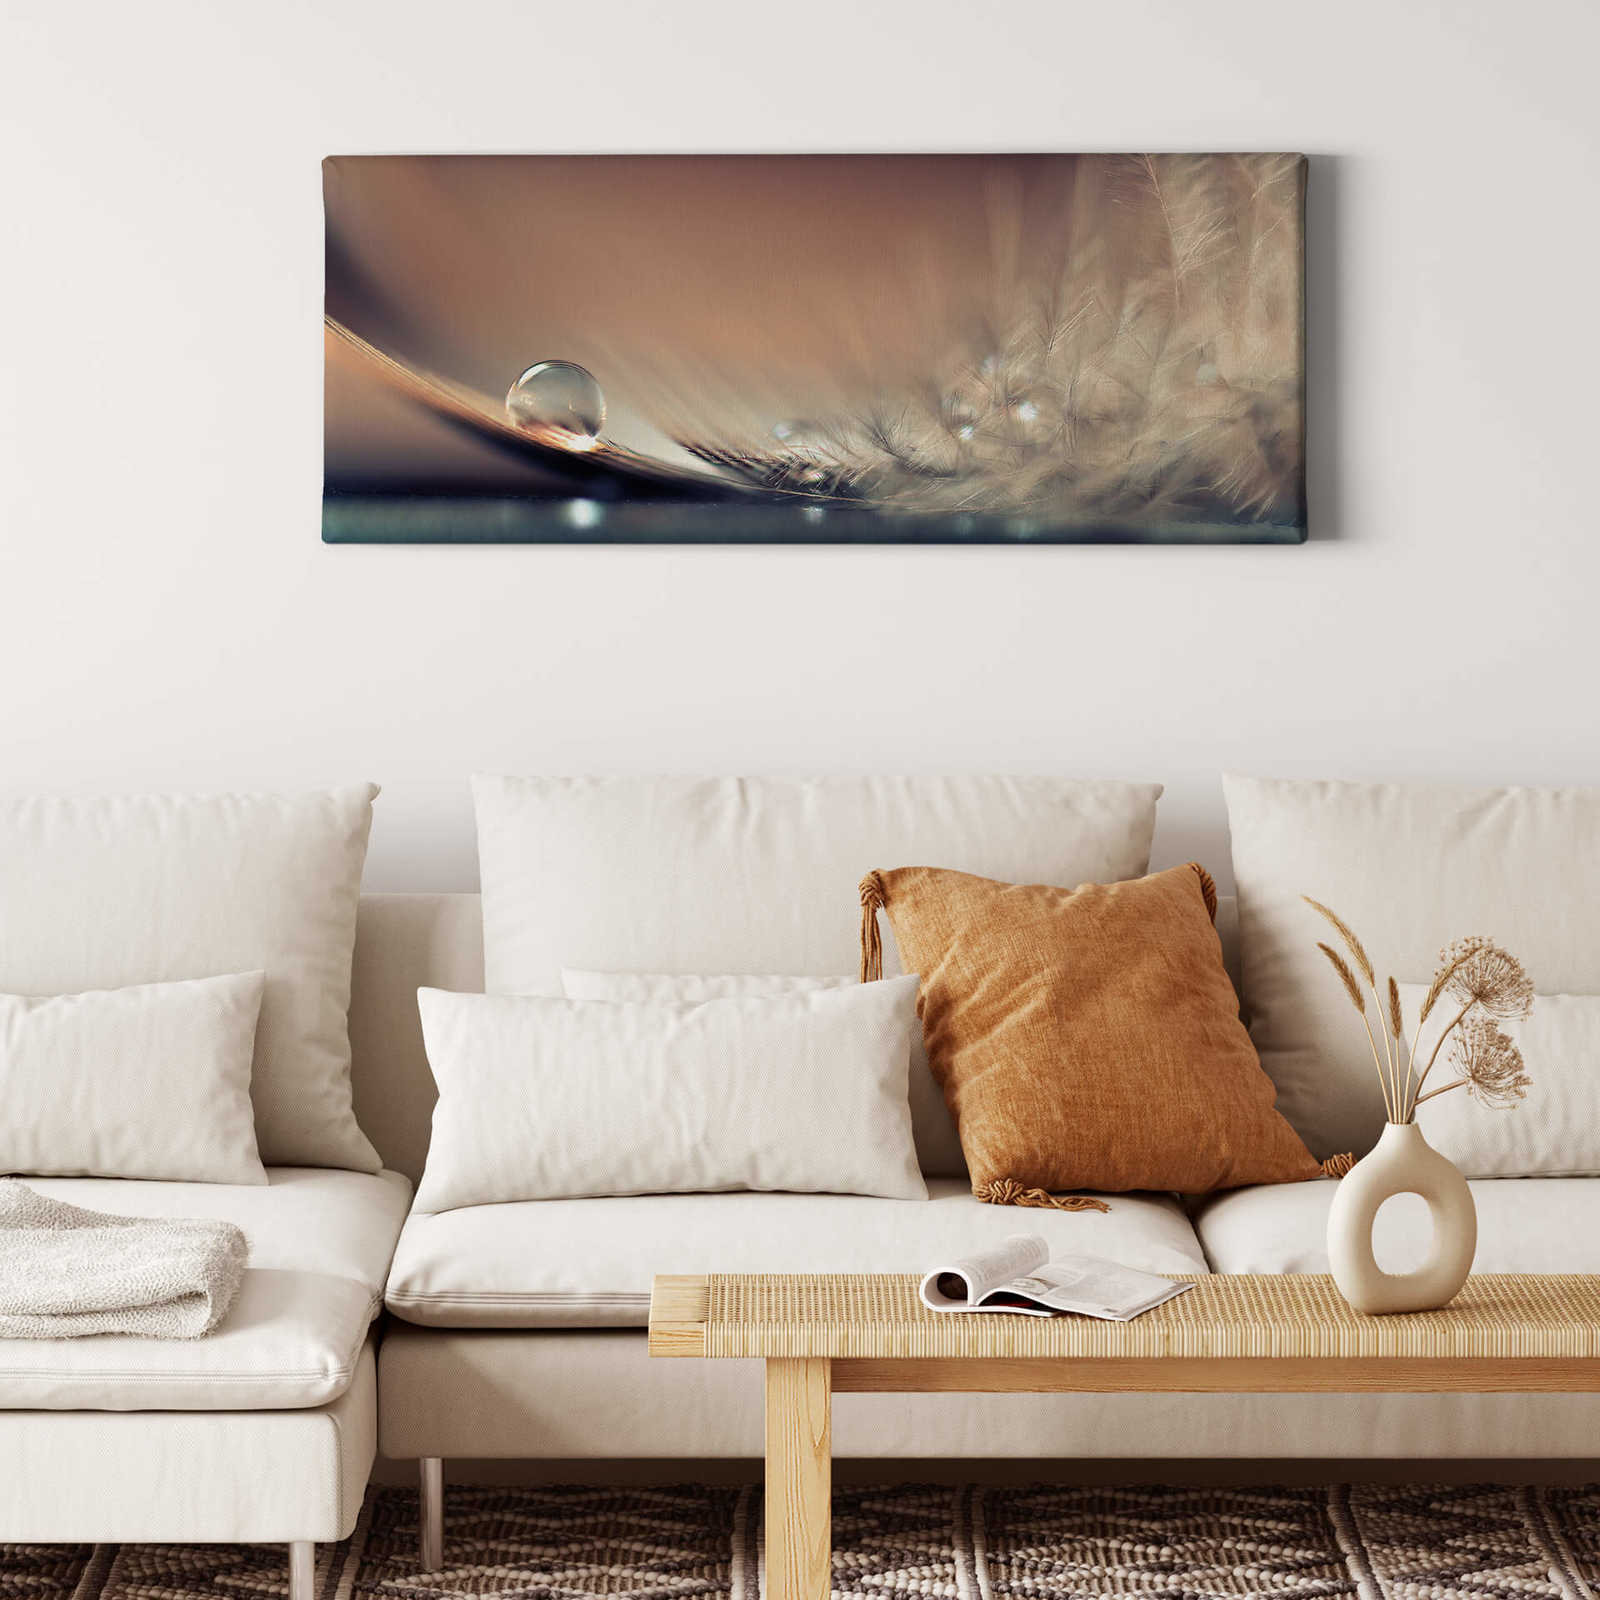             Canvas schilderij Panorama Waterdruppels & Veer door Dmitry - 1.00 m x 0.40 m
        